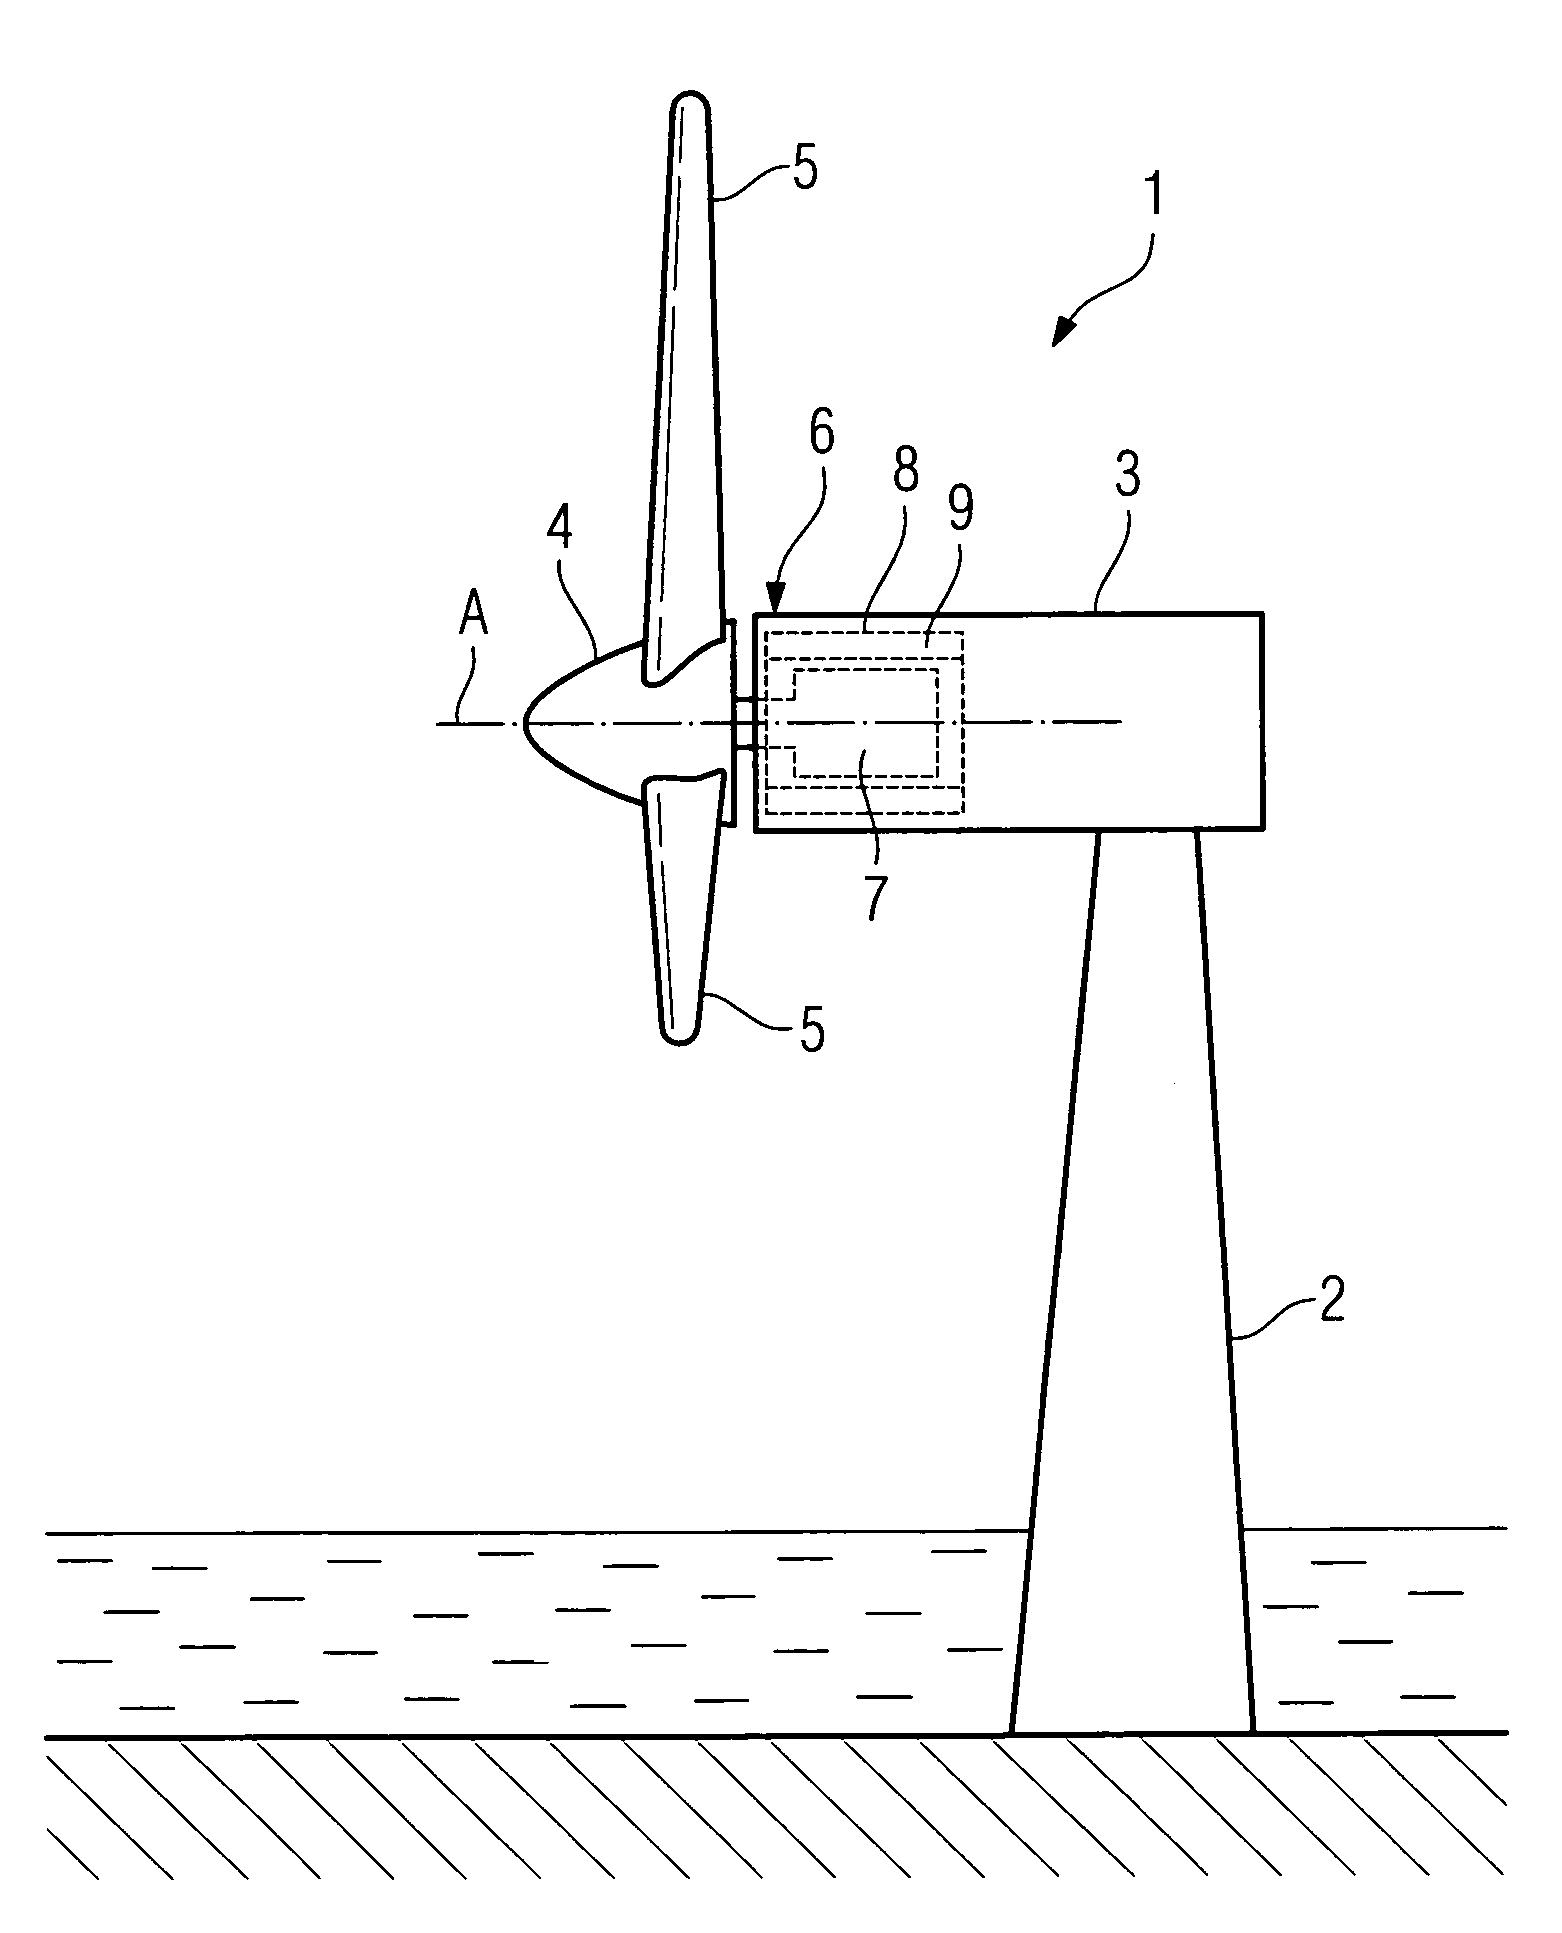 Stator arrangement, generator and wind turbine